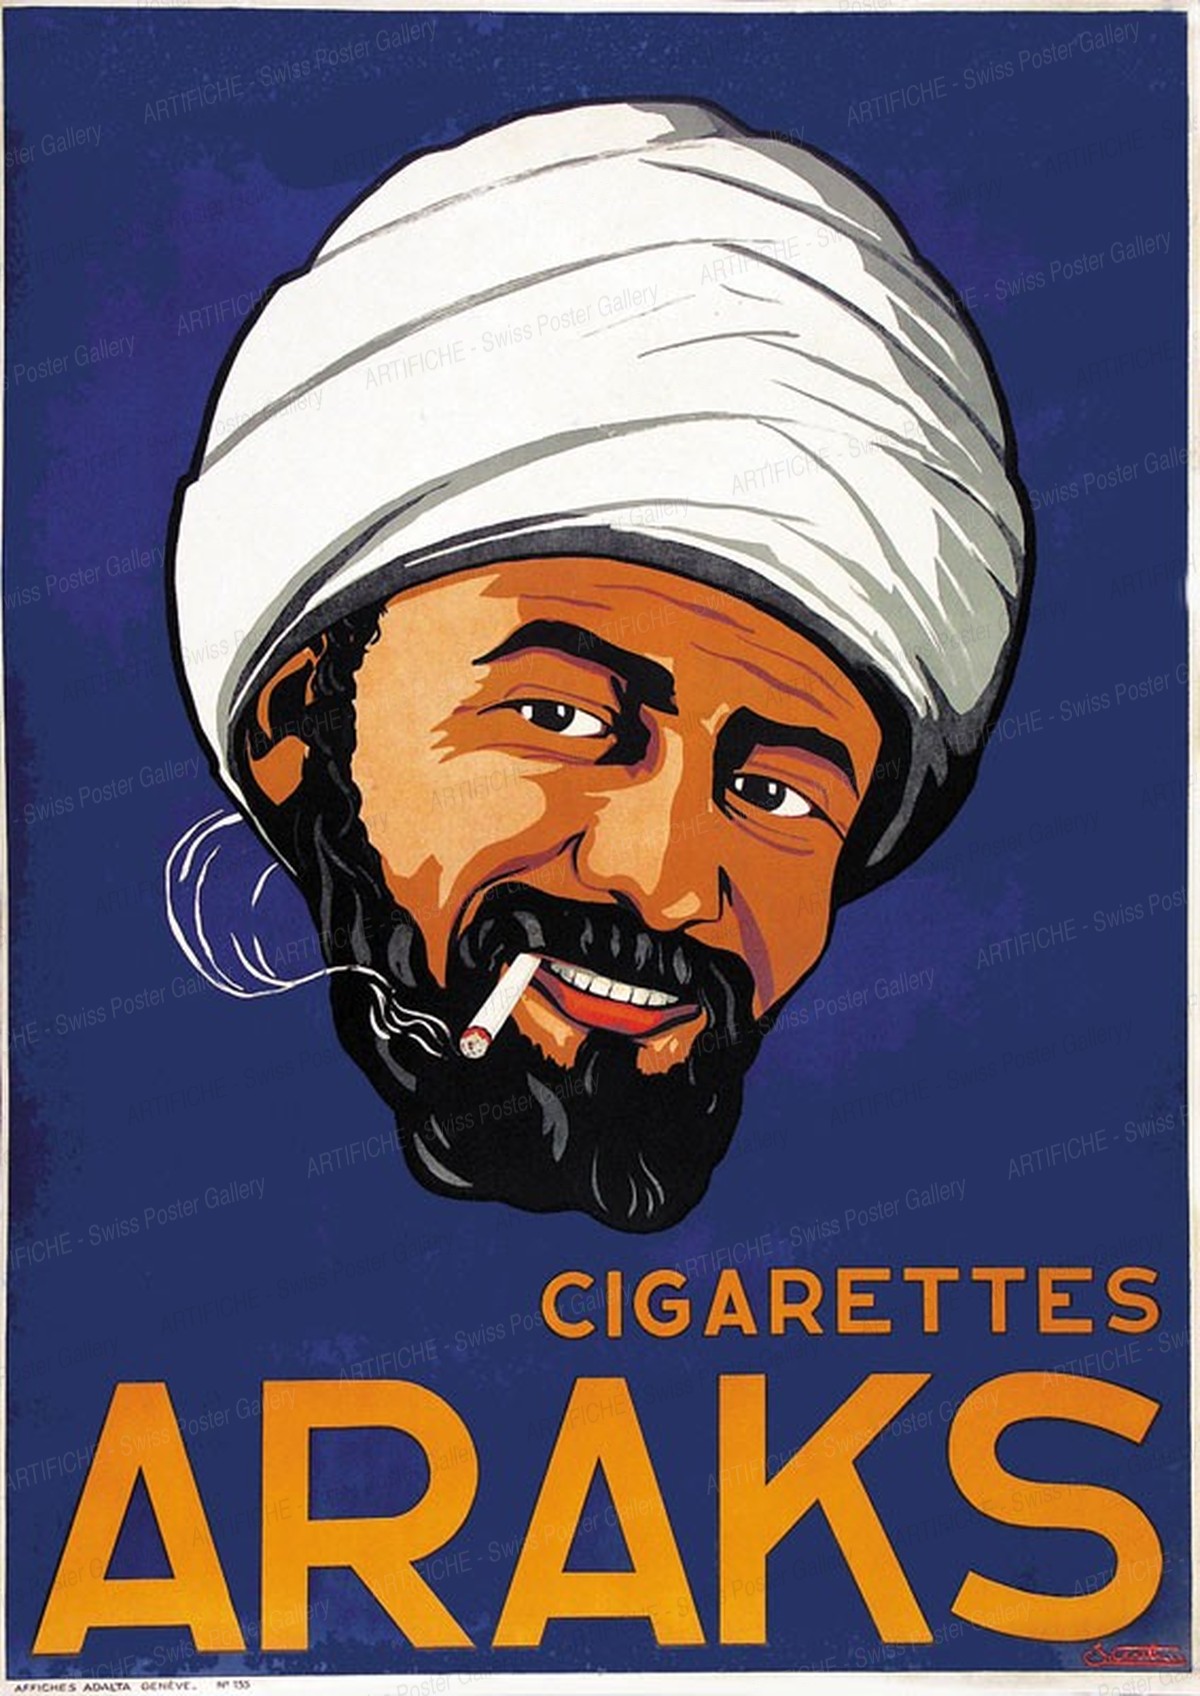 Araks Cigarettes, Althaus, Paul O., Atelier